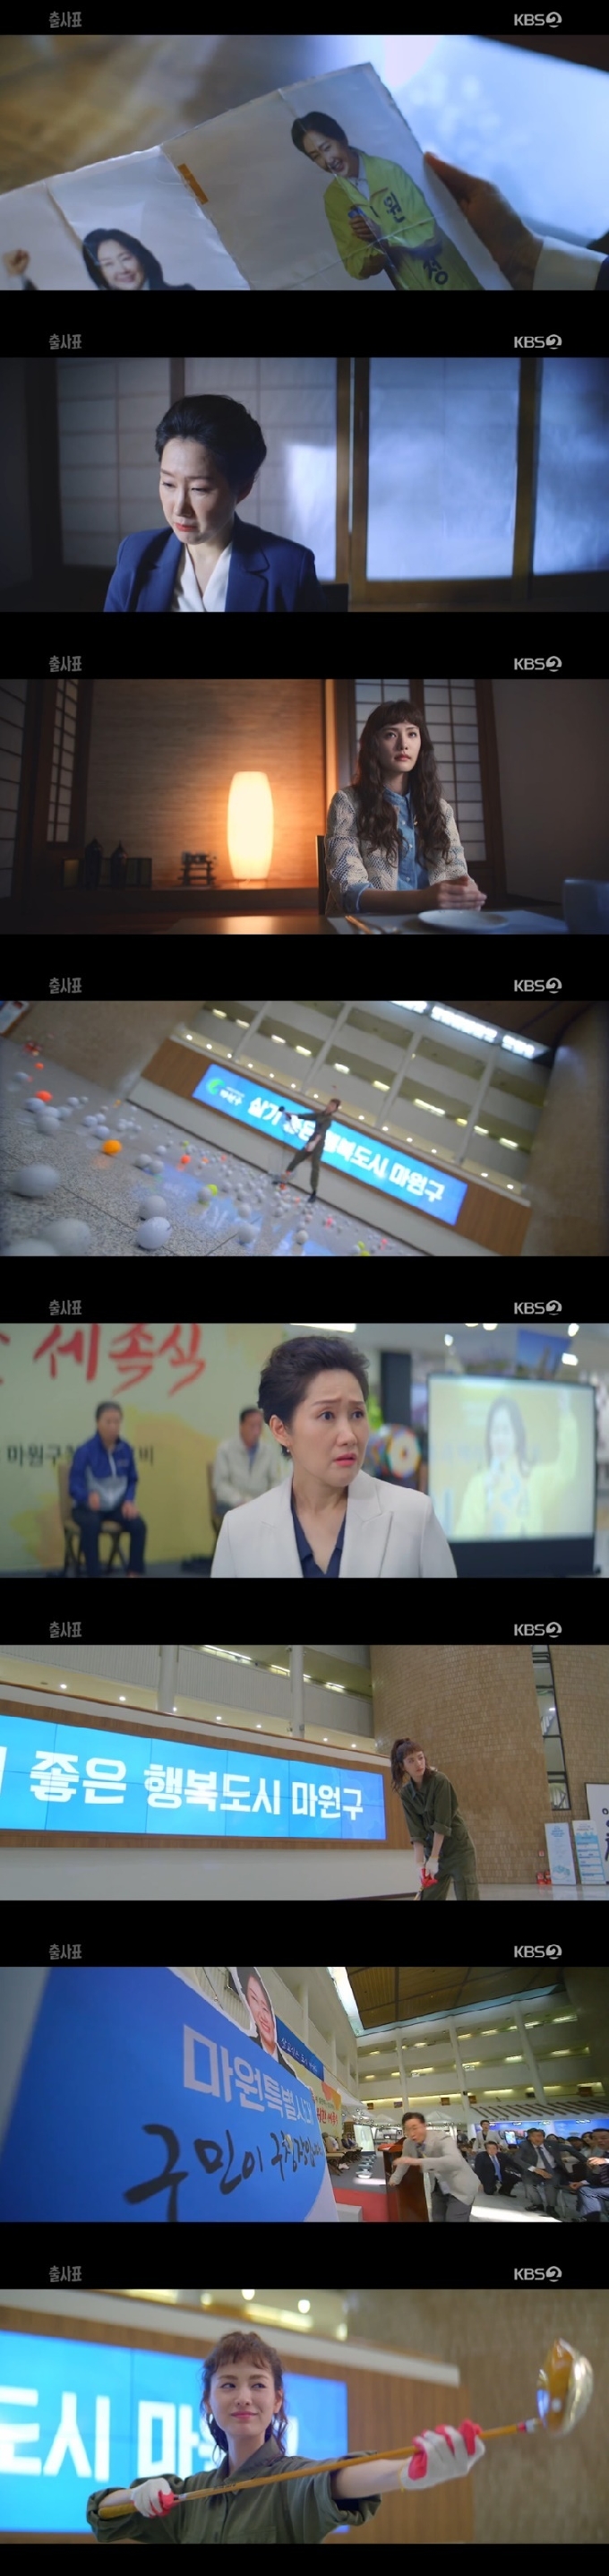 KBS 2TV &apos;ǥ&apos; ĸó &copy; 1